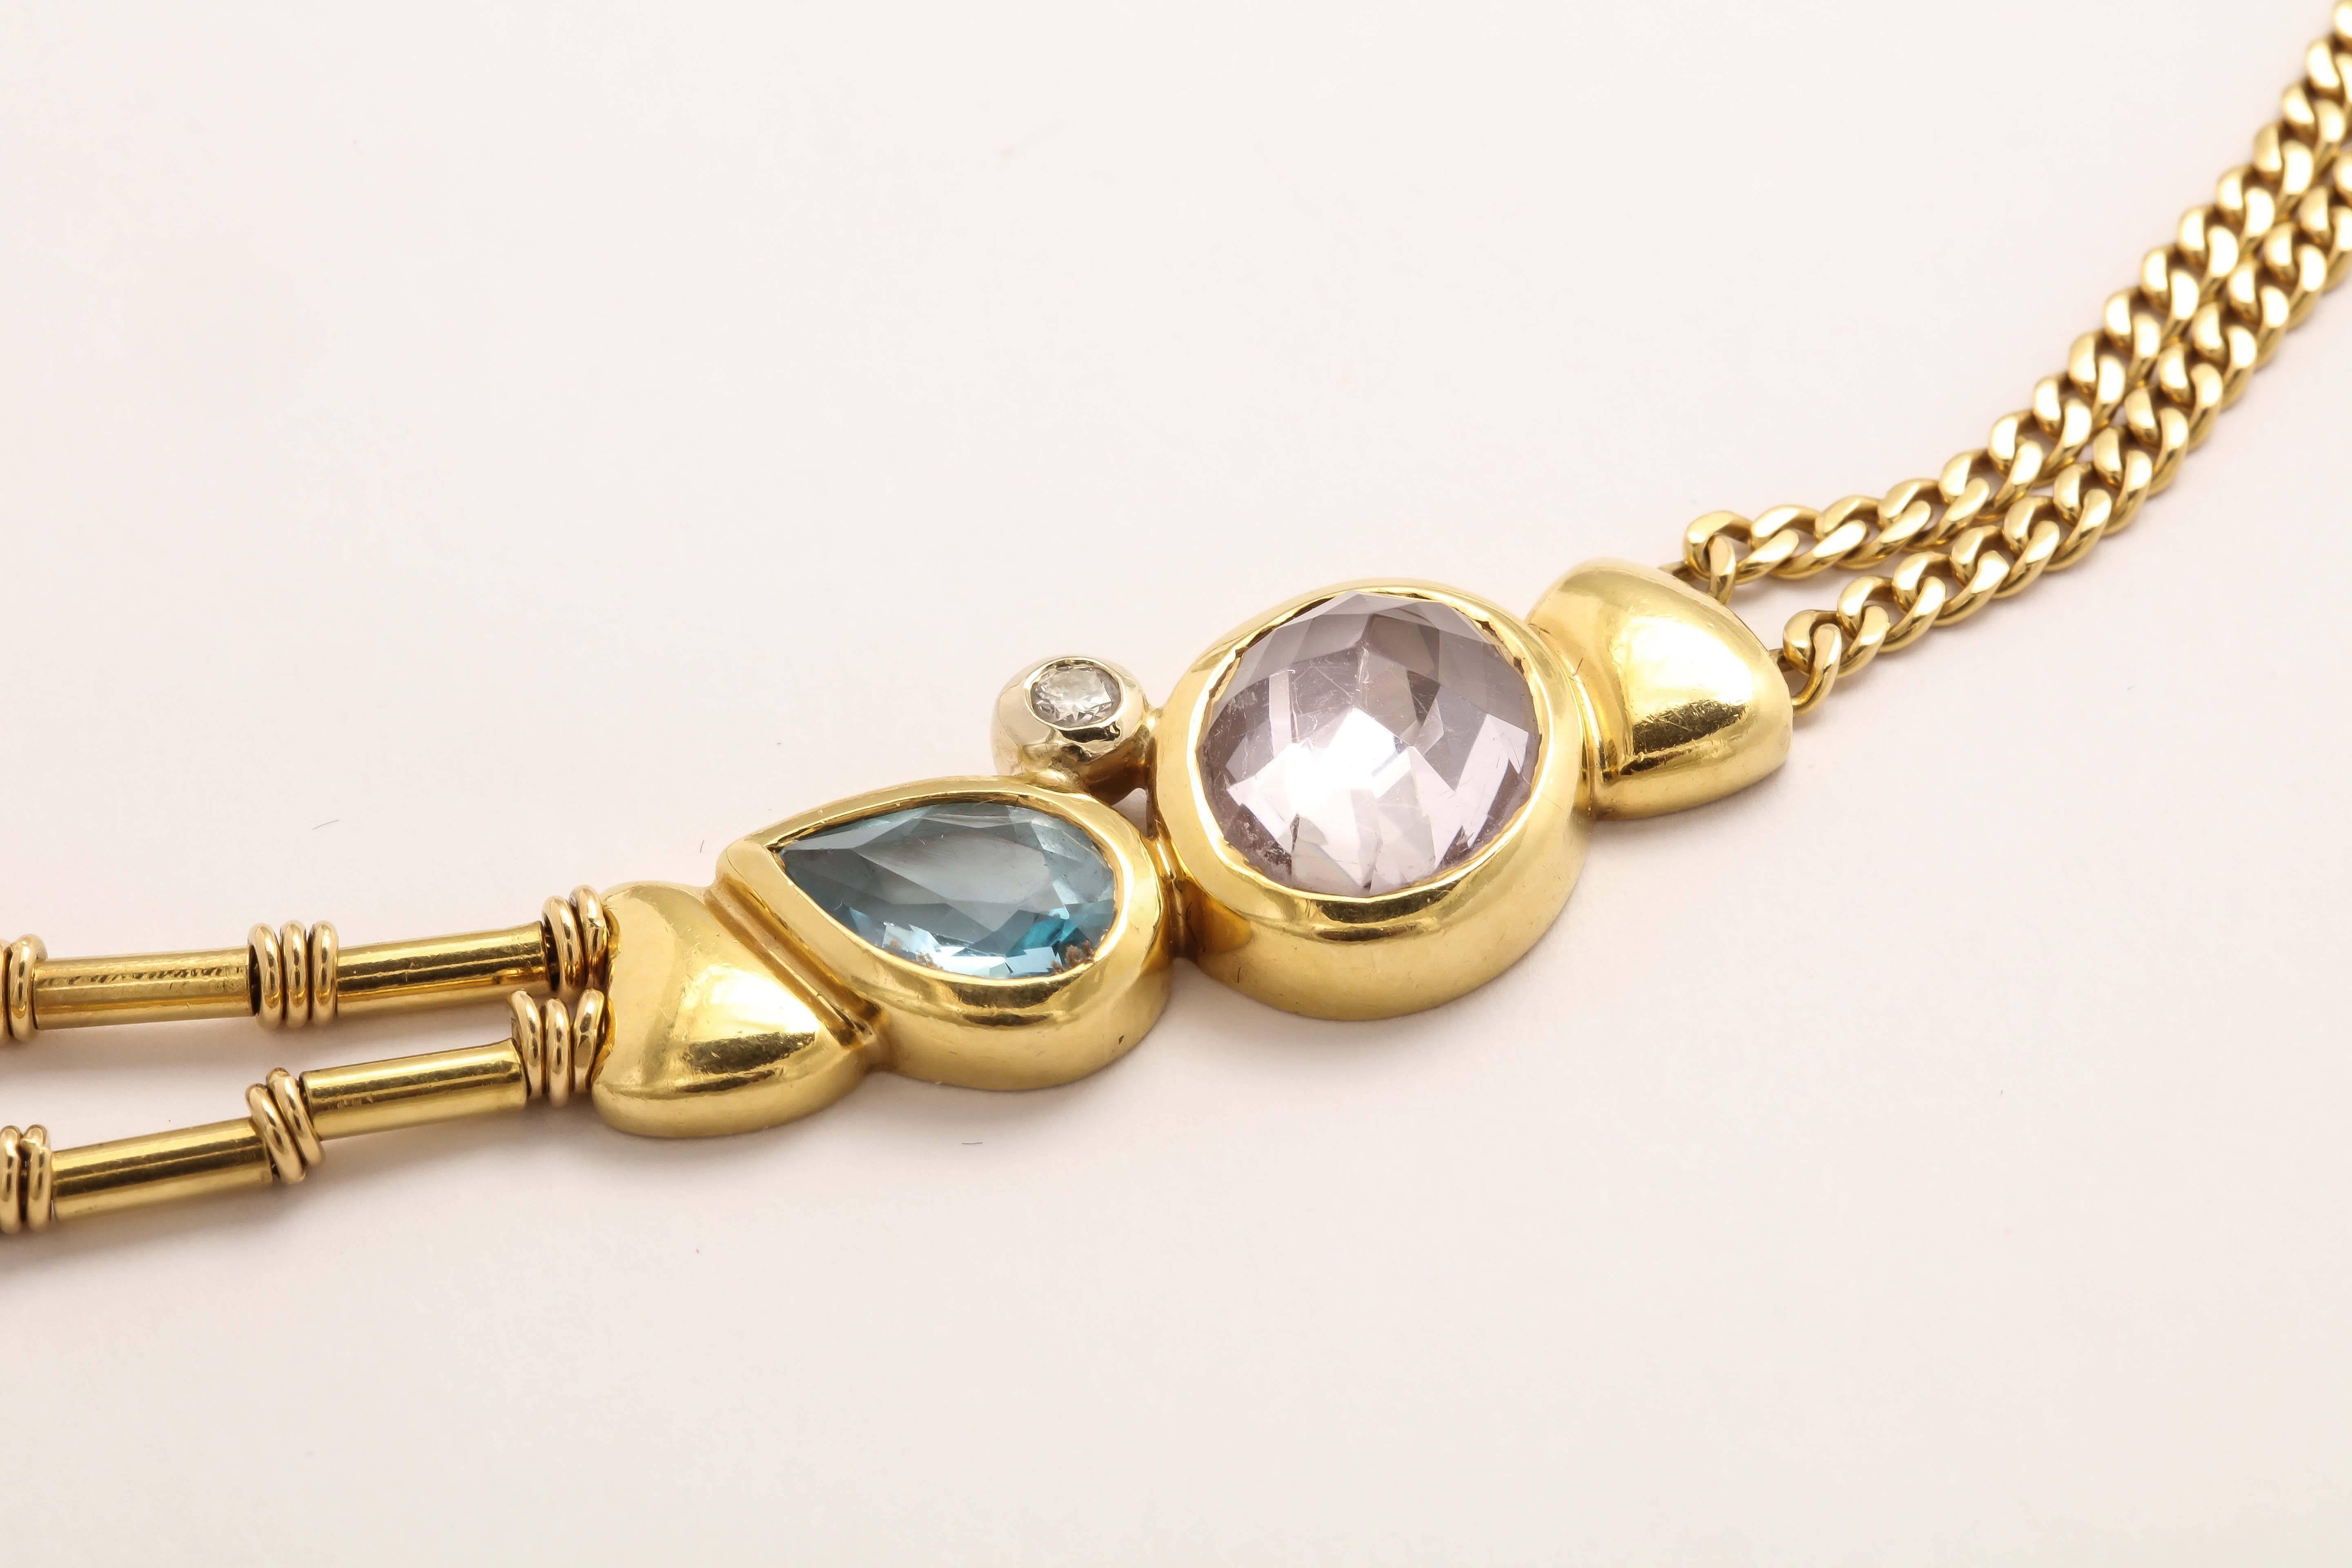 Manfredi Gold and Precious Stone Necklace 4